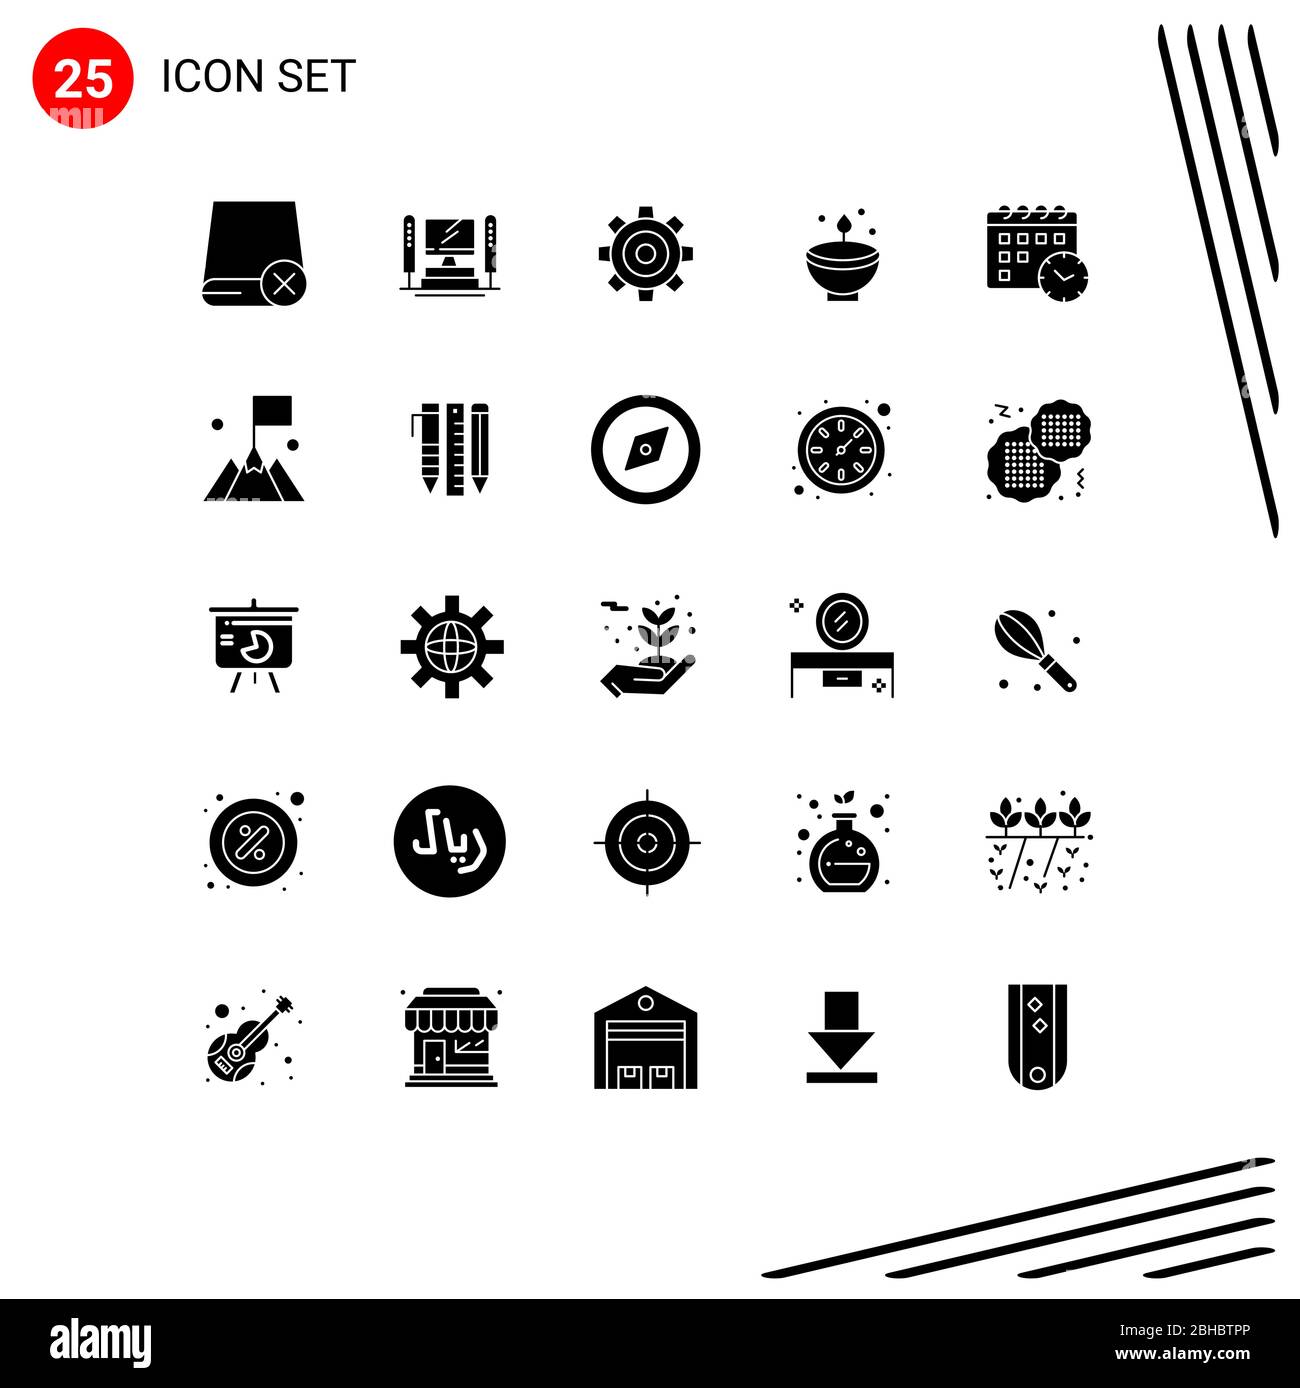 25 interfaccia utente Solid Glyph Pack di segni moderni e simboli di diwali, Deepam, cpu, celebrare, impostare elementi di progettazione vettoriale editabili Illustrazione Vettoriale